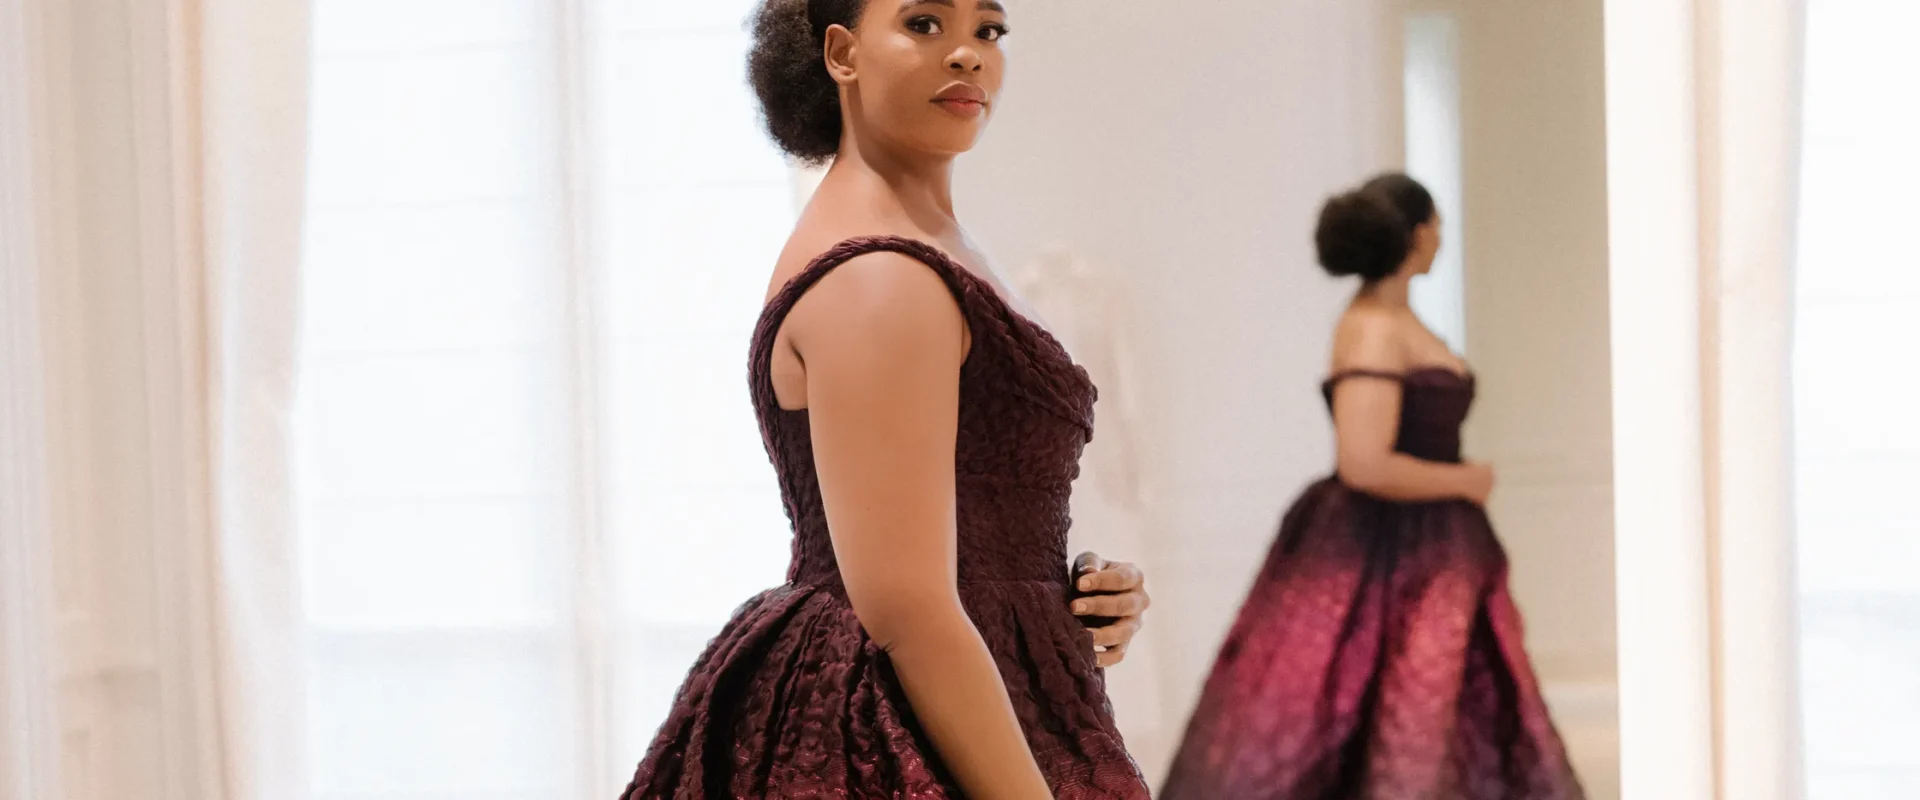 Sopranistka Pretty Yende nową ambasadorką domu mody Dior